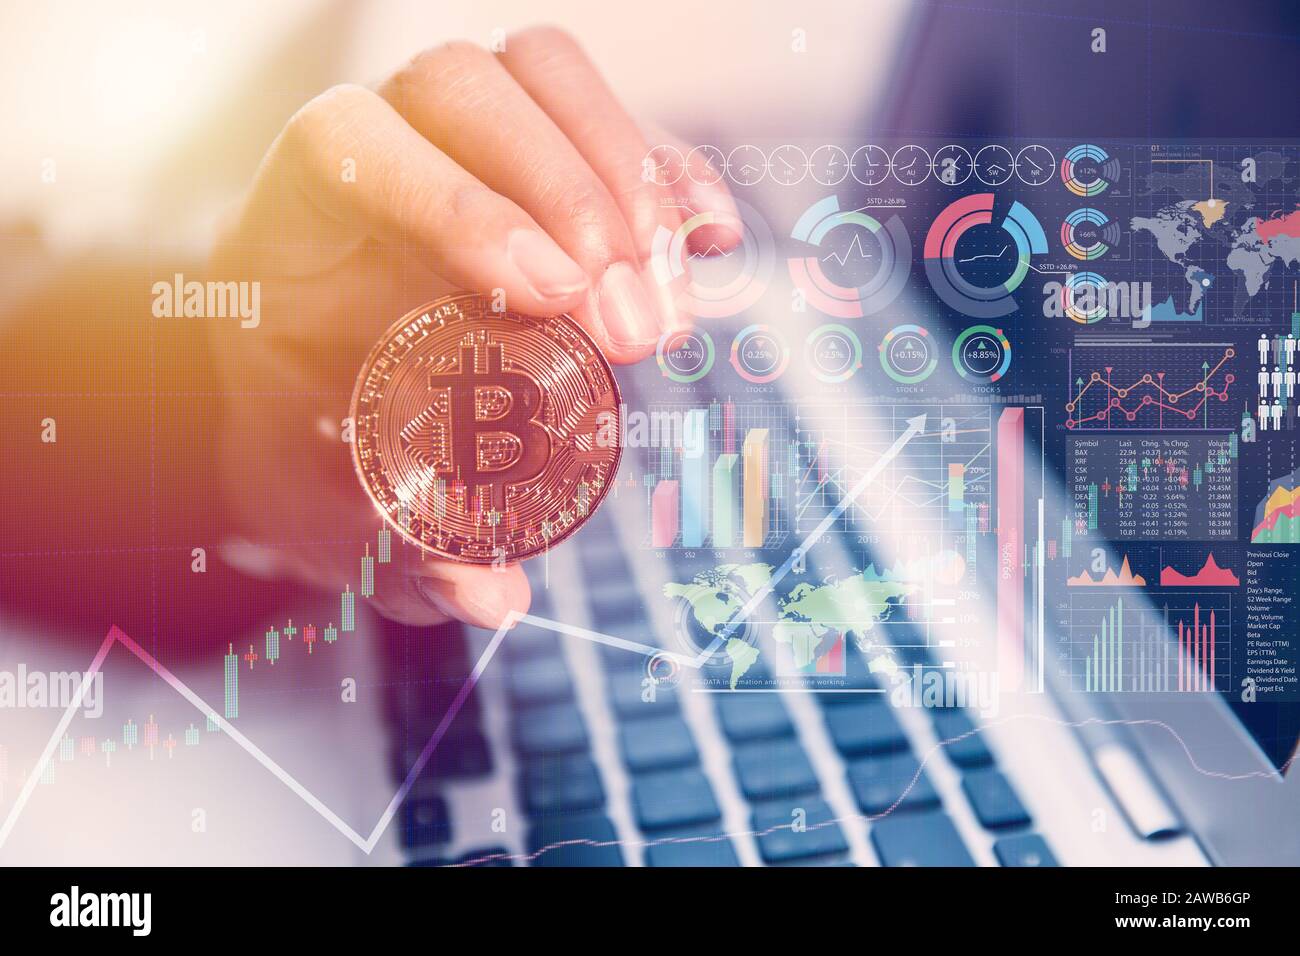 Bitcoin avec infographie ordinateur portable pour argent numérique ou crypto-monnaie nouveau concept de technologie de paiement de monnaie virtuelle Banque D'Images